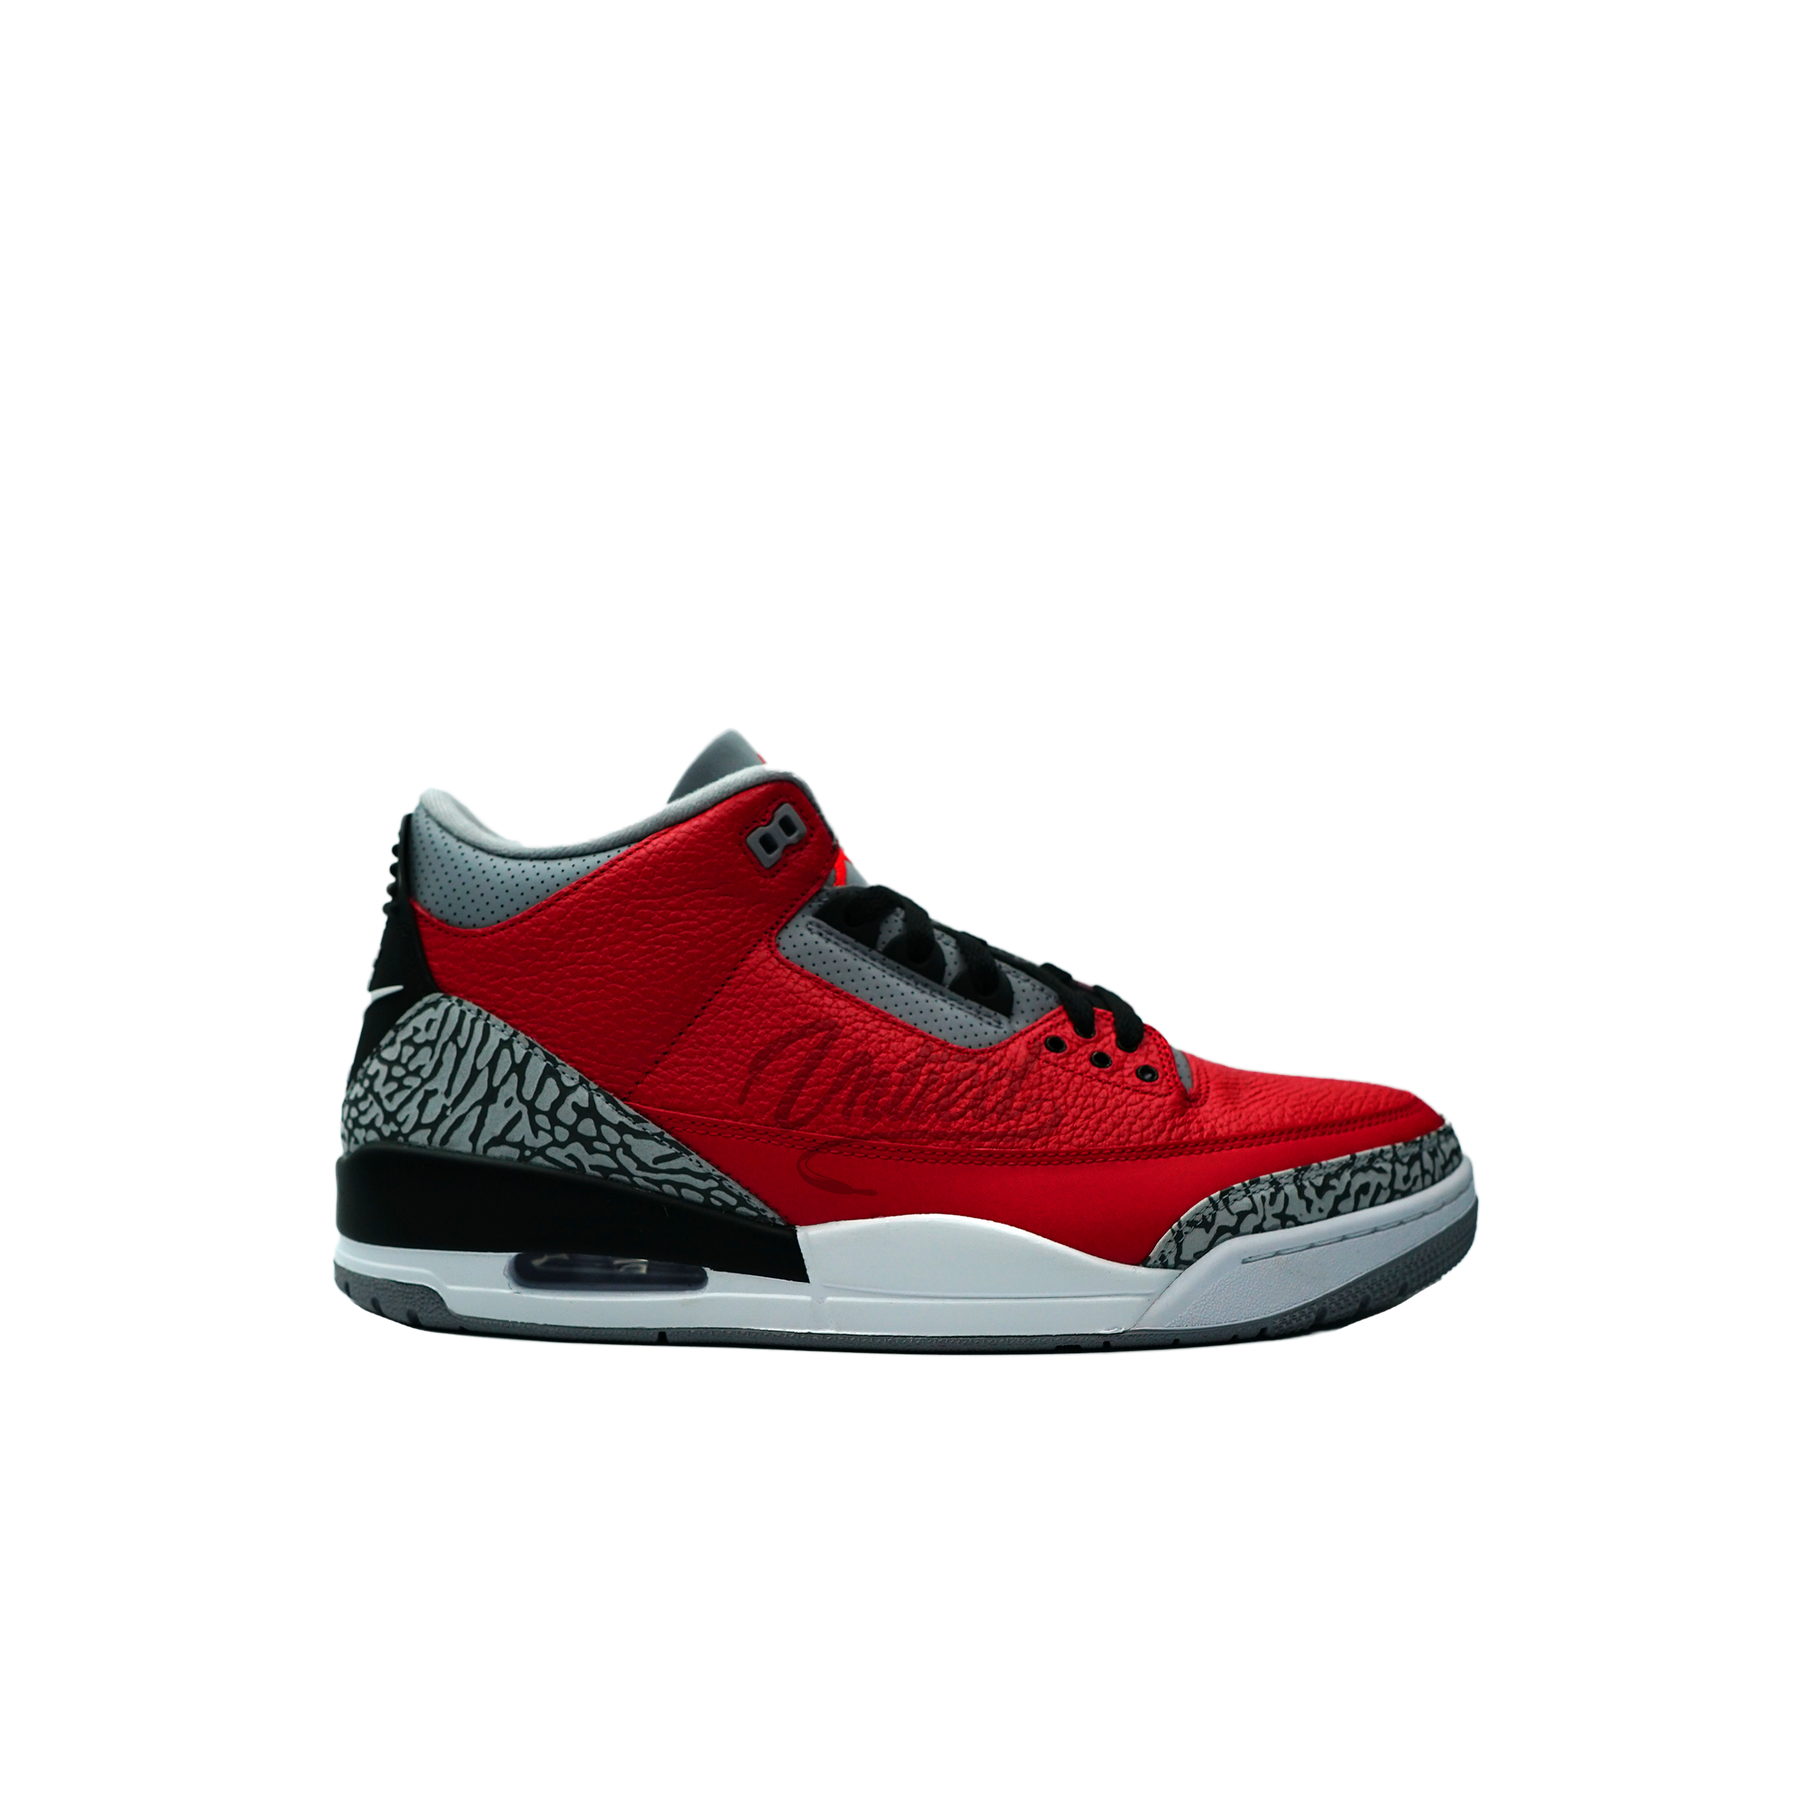 Air Jordan 3 "Unite Fire Red"